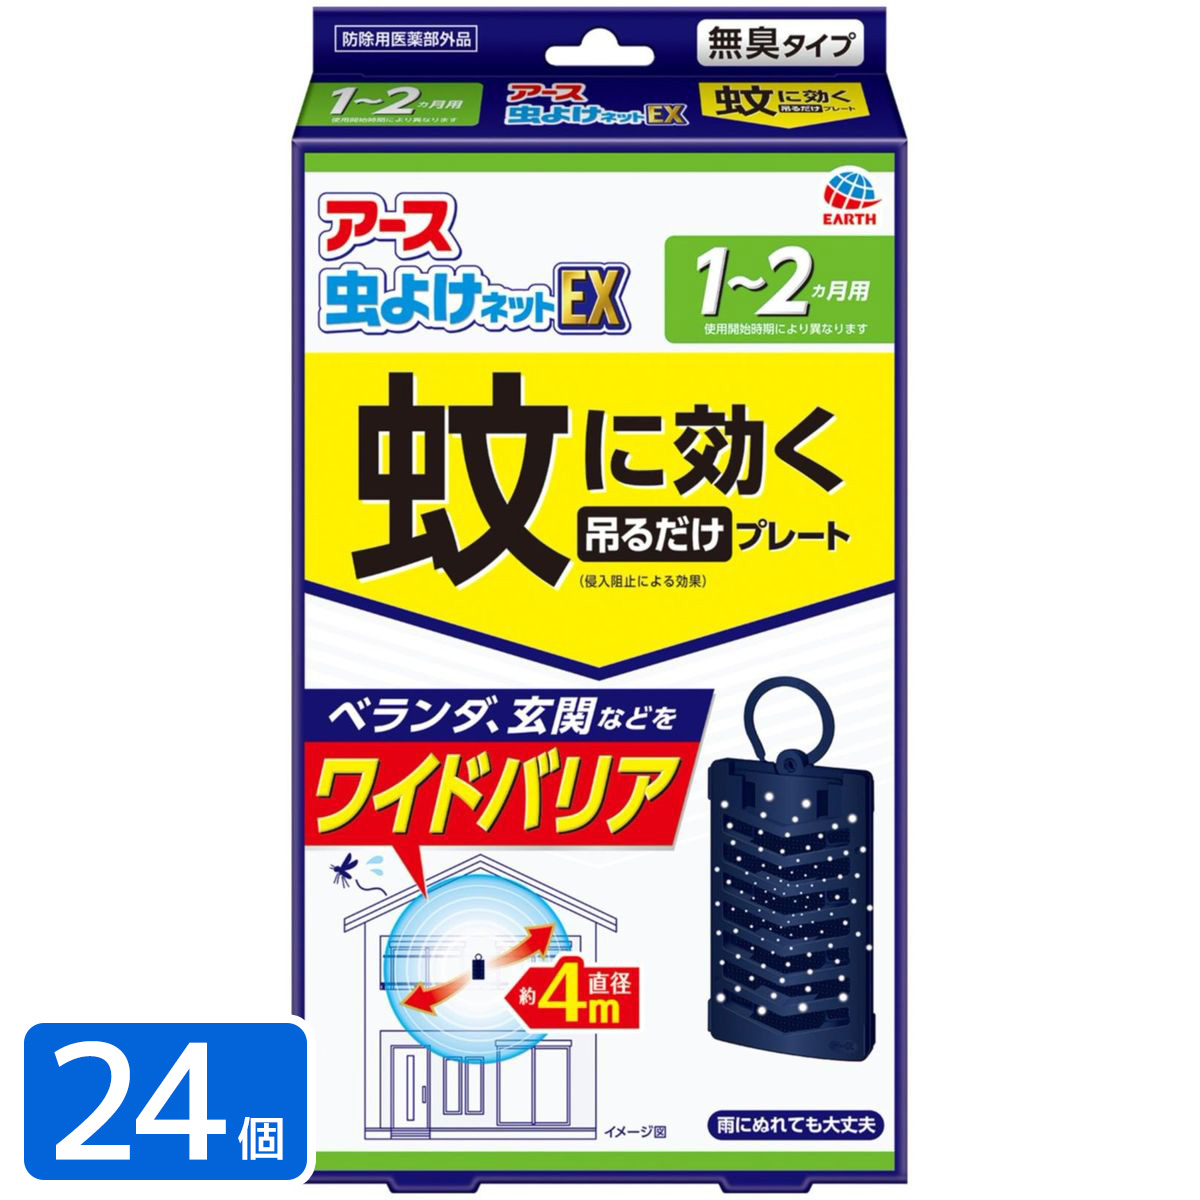 アース 蚊よけネットEX 1~2ヵ月用 殺虫剤×24本